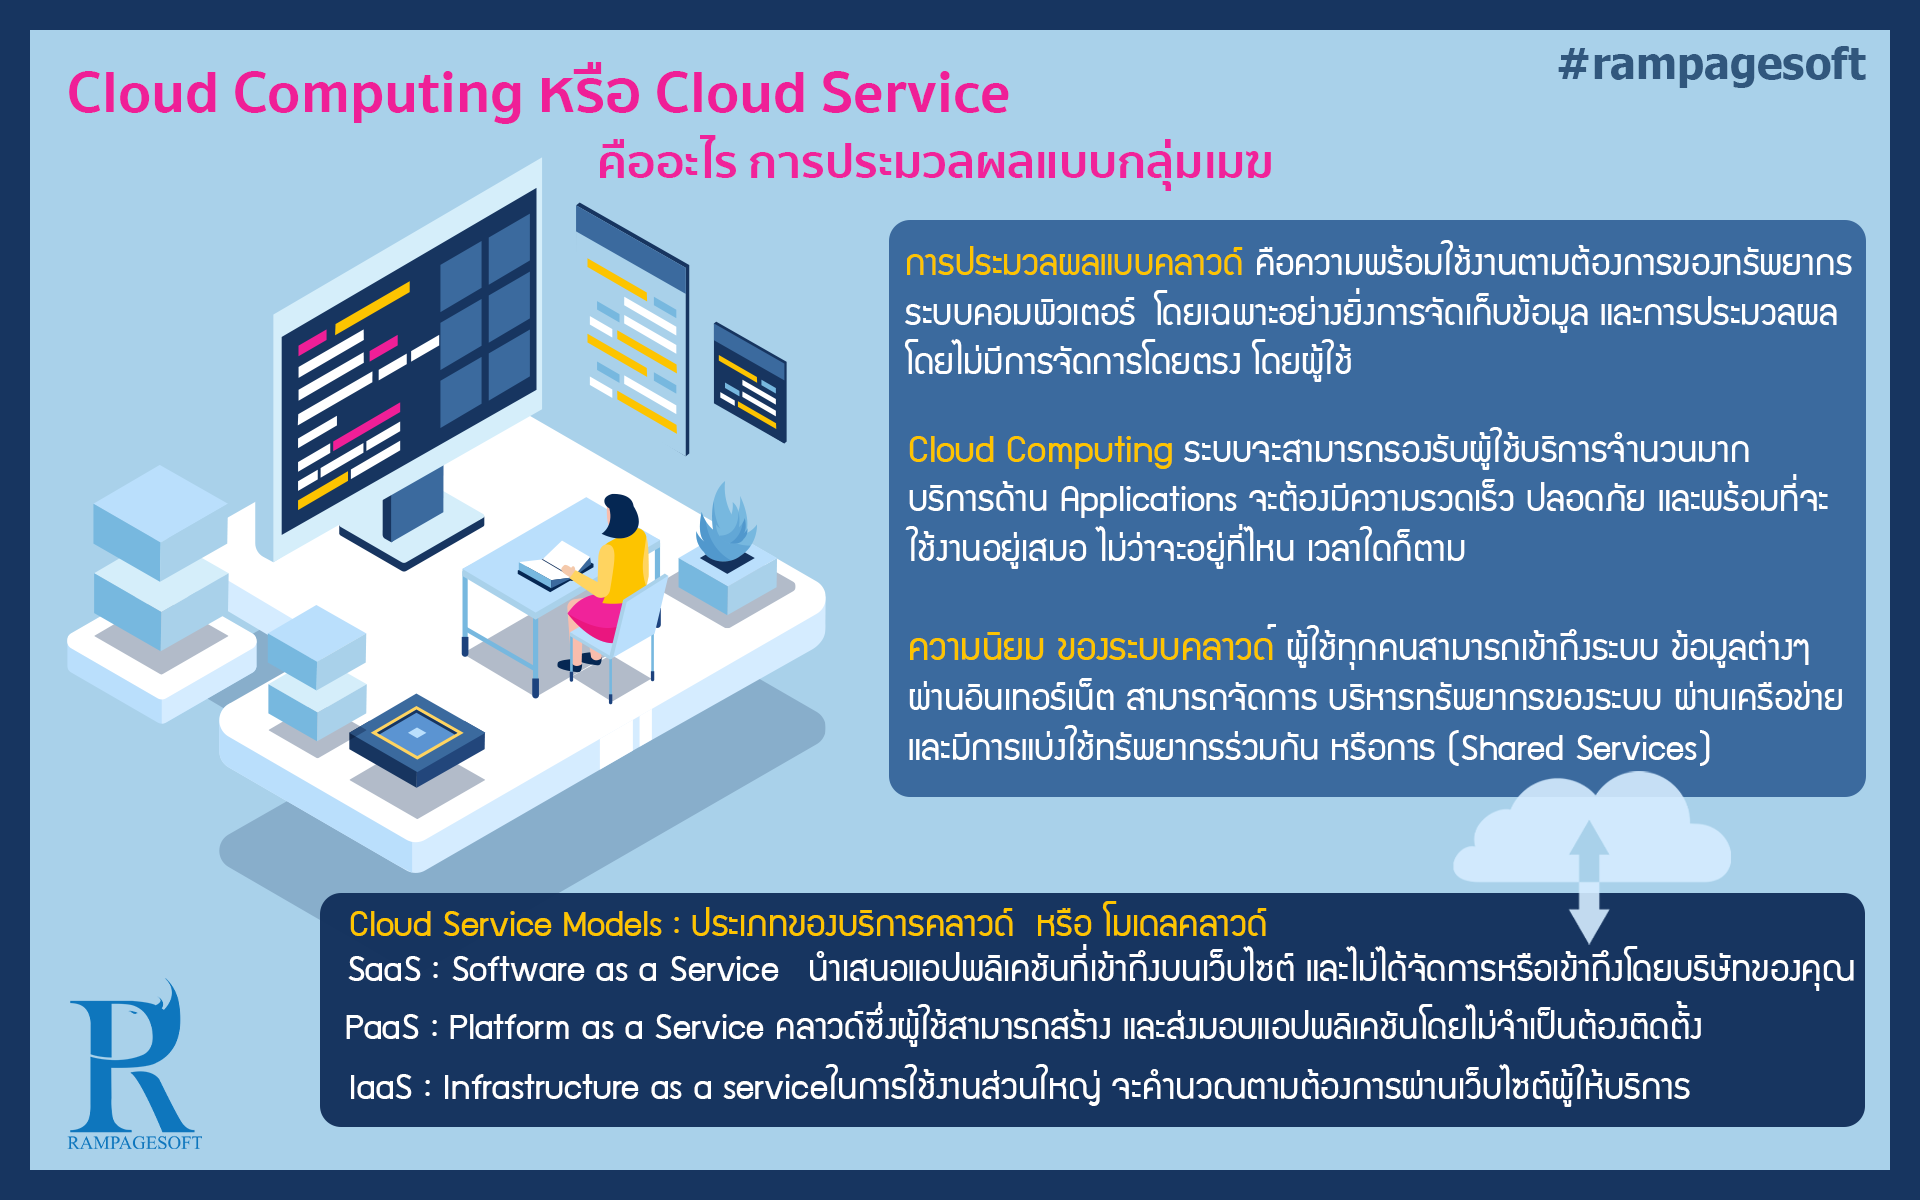 รับทําเว็บไซต์ เว็บขยายสายงาน Cloud Computing Or Cloud Service | TTT-WEBSITE 